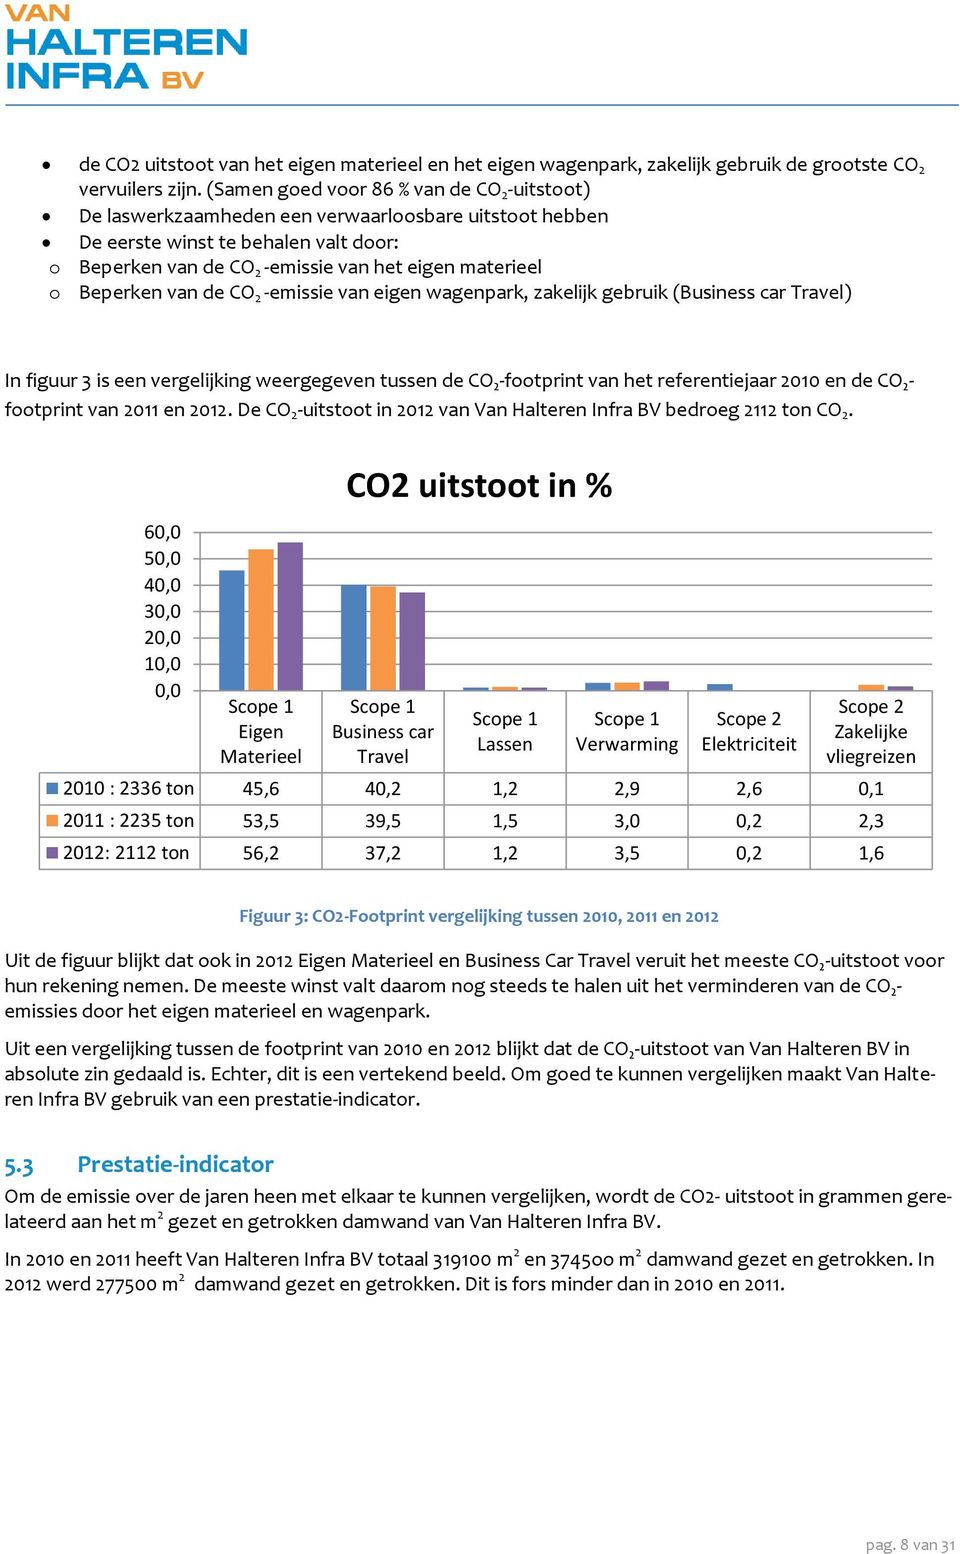 Beperken van de CO 2 -emissie van eigen wagenpark, zakelijk gebruik (Business car Travel) In figuur 3 is een vergelijking weergegeven tussen de CO₂-footprint van het referentiejaar 2010 en de